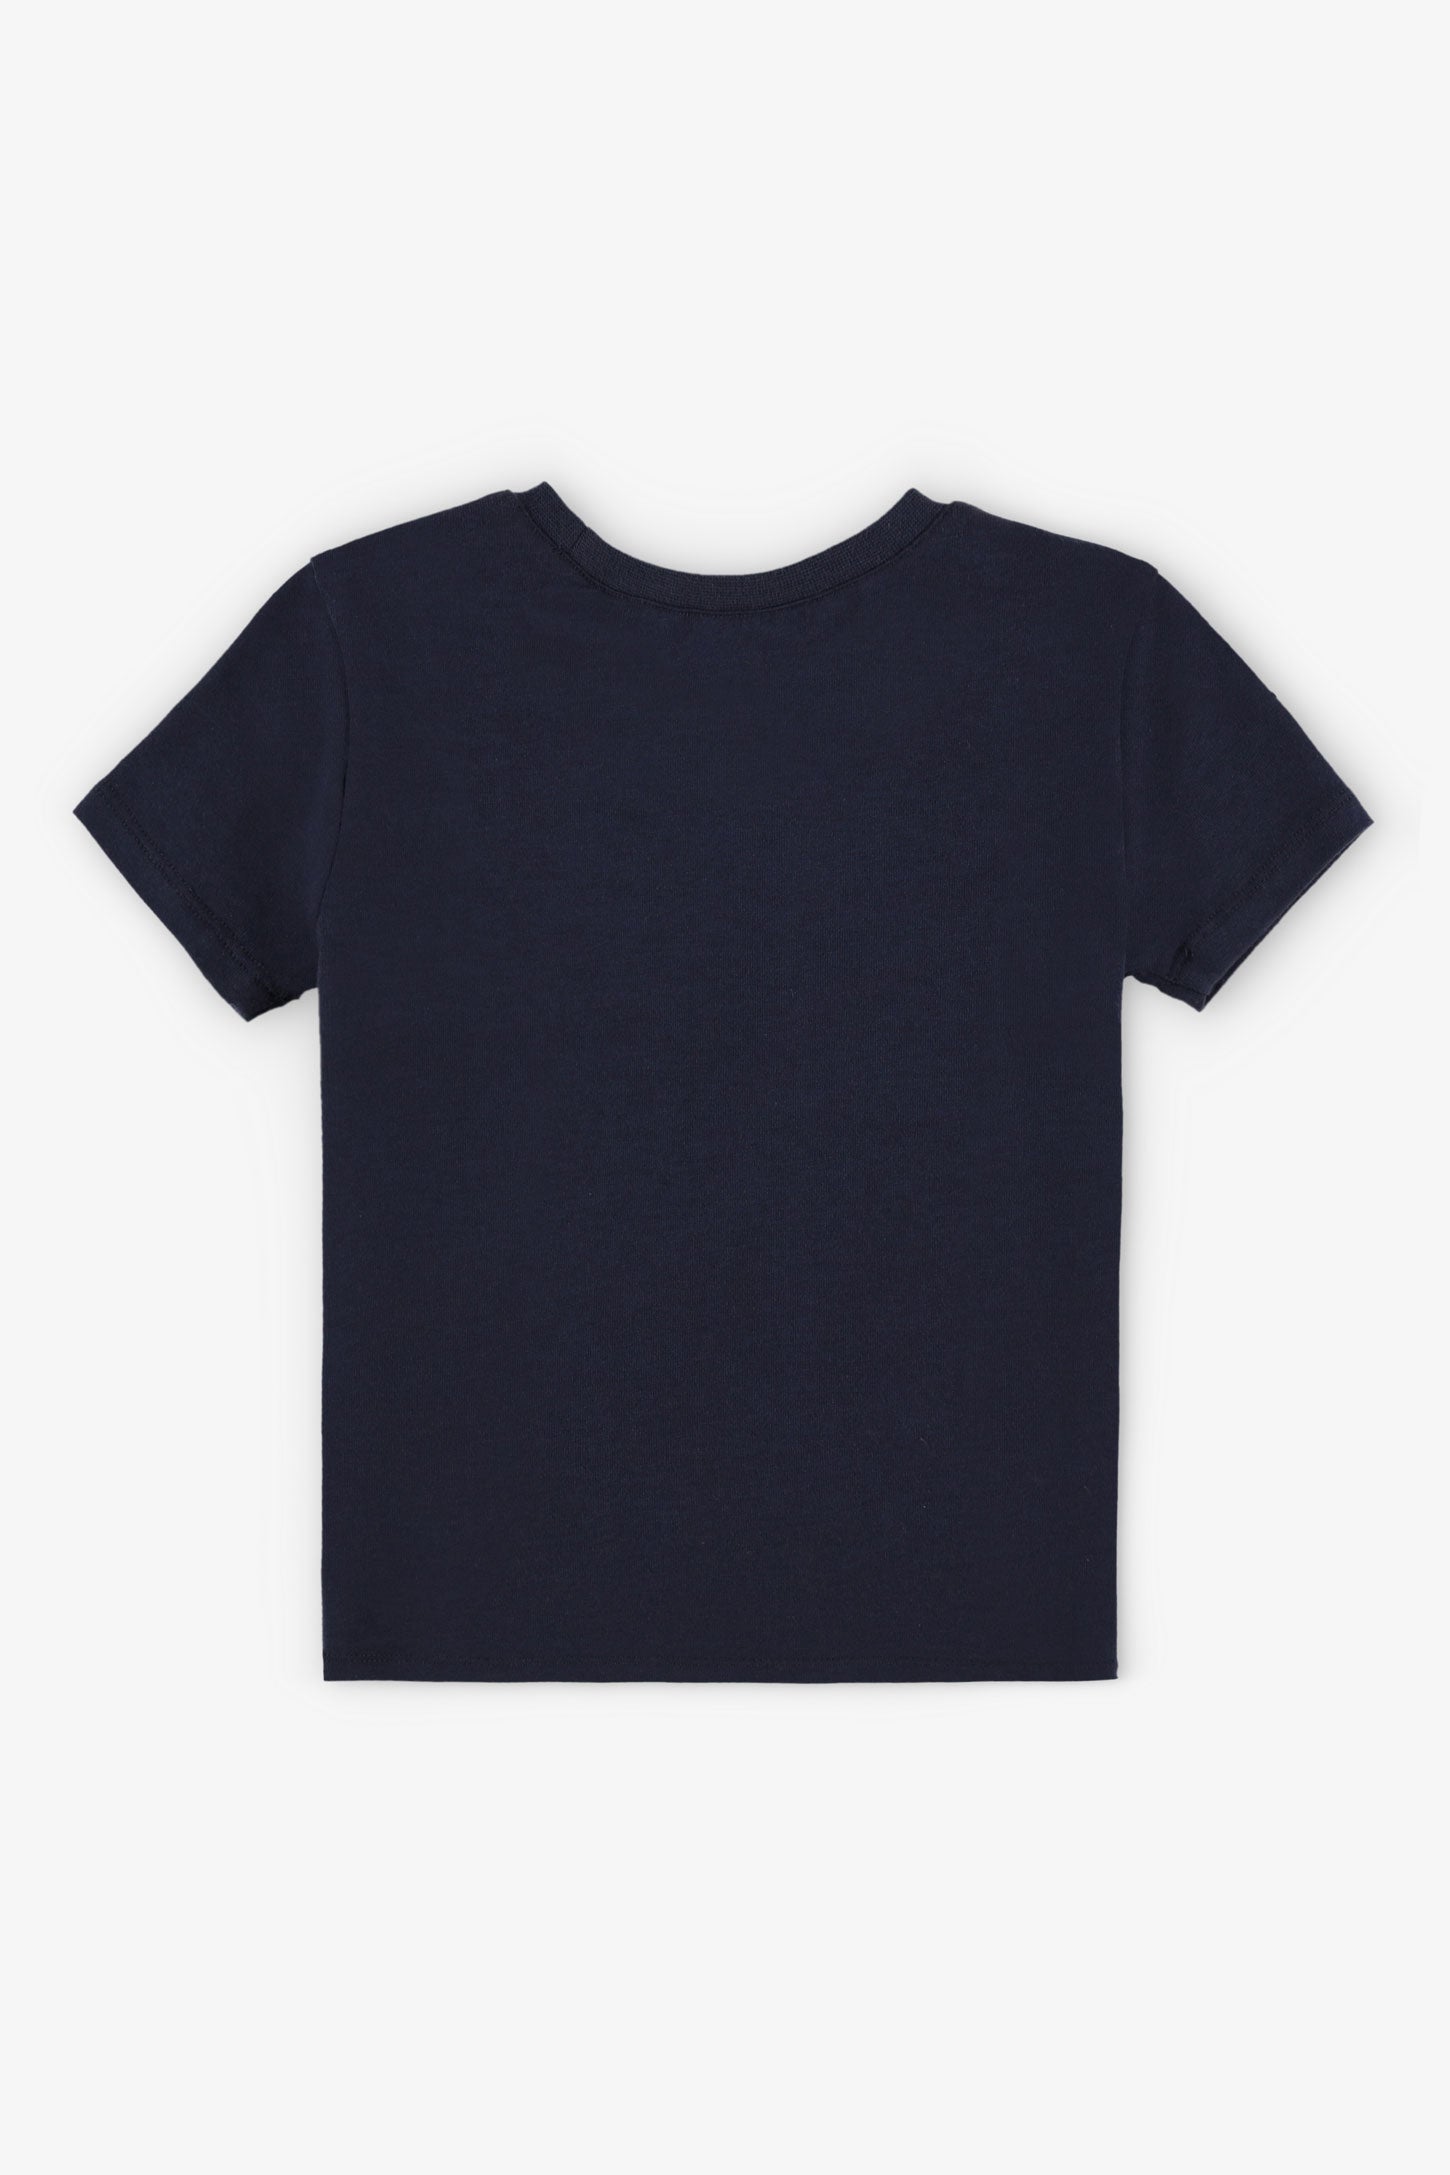 T-shirt rond coupe droite coton, 2T-3T, 2/15$ - Bébé garçon && BLEU MARINE